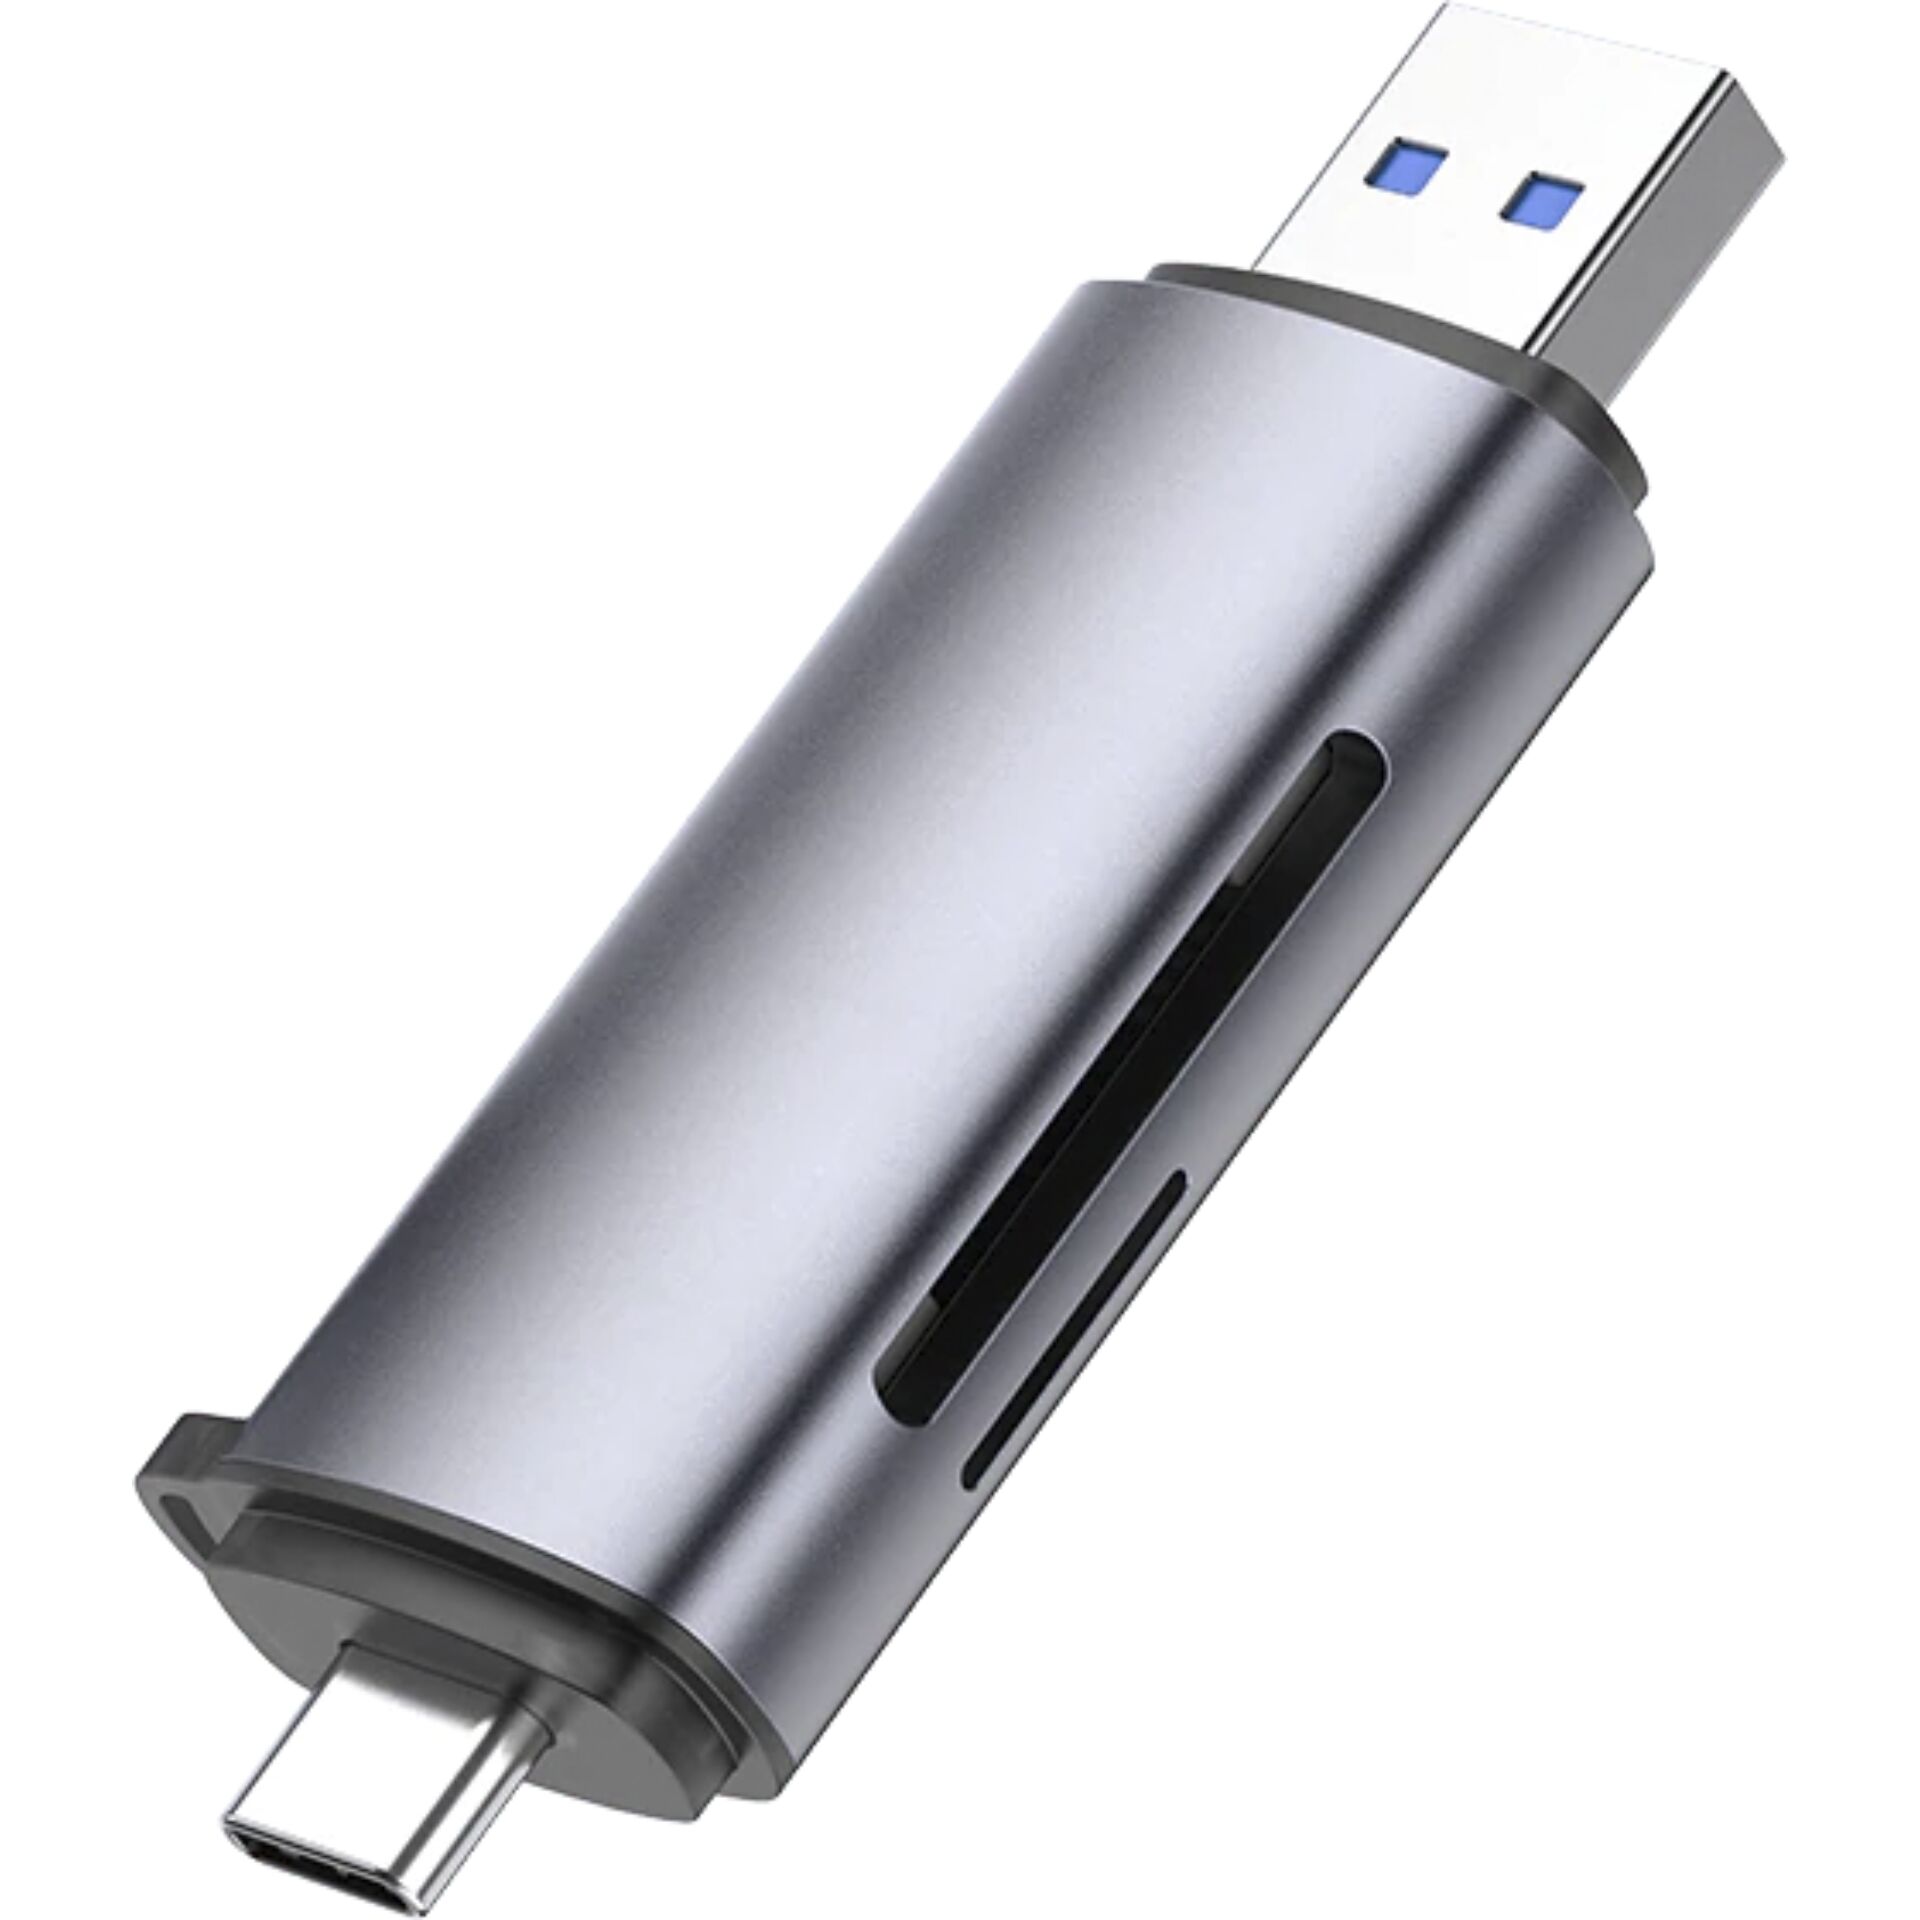 UGREEN 2-in-1 USB-C OTG Card Reader